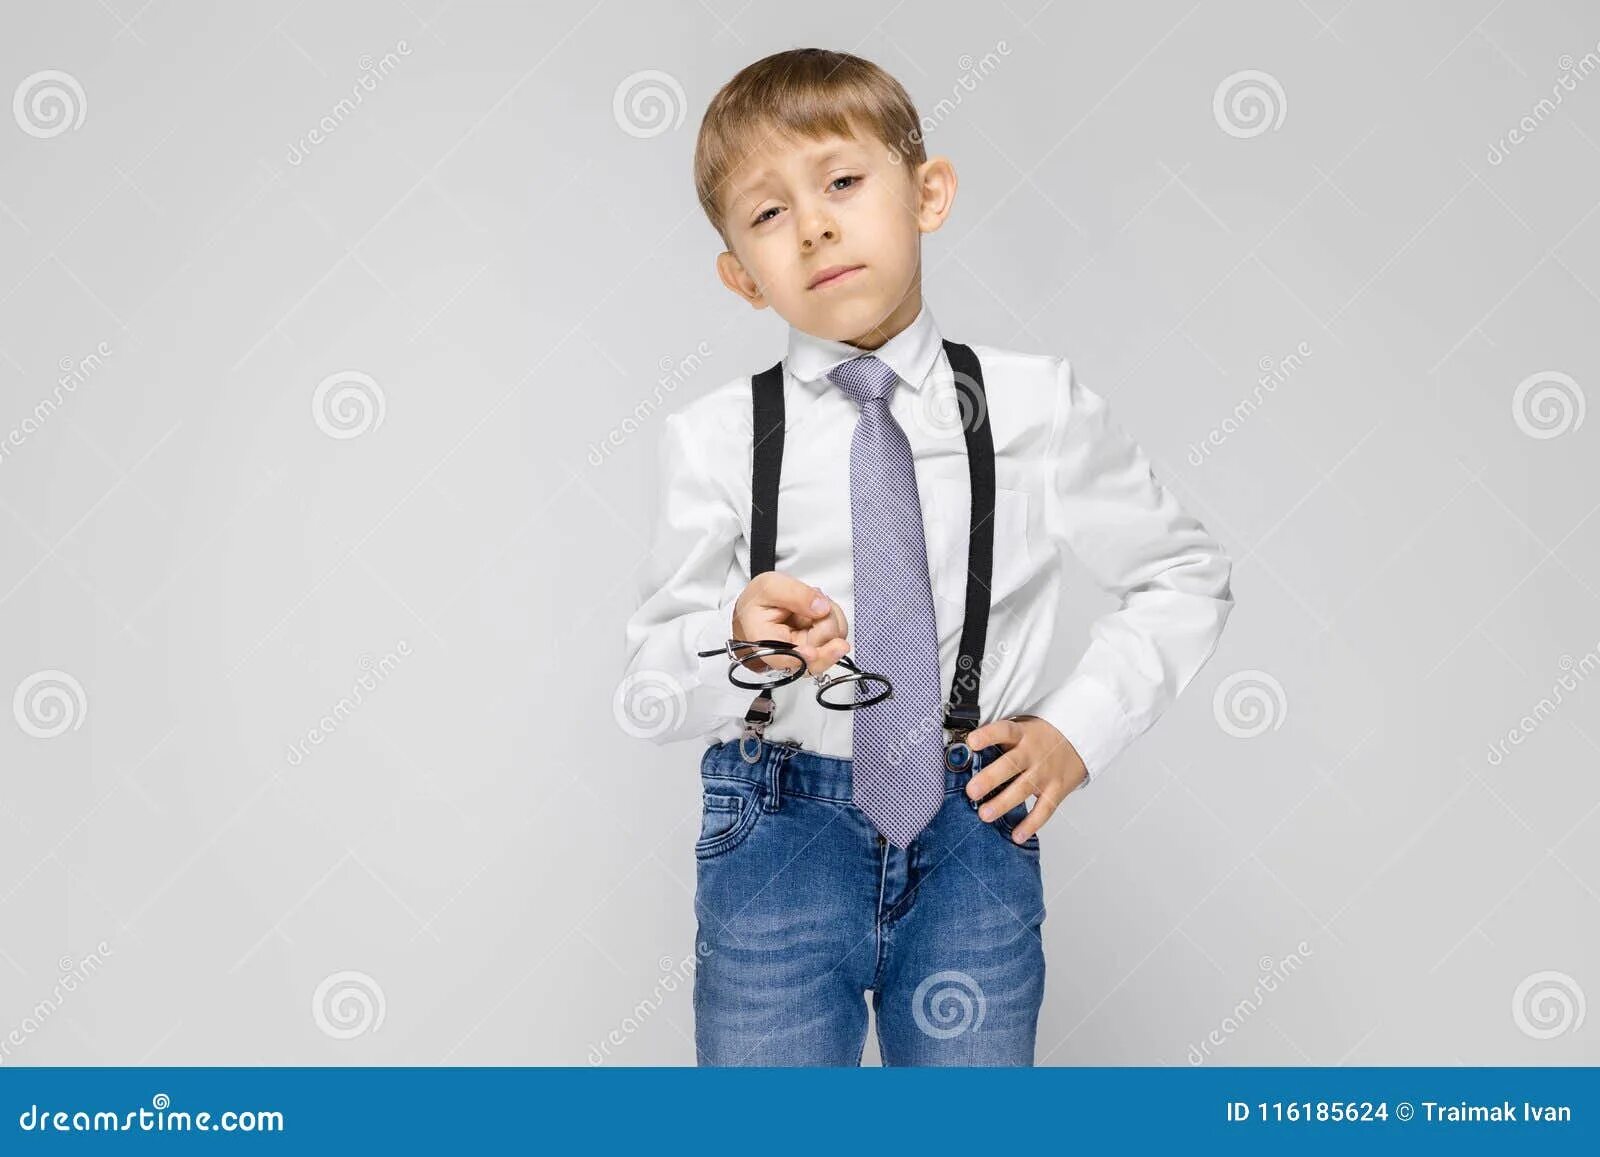 Произведение мальчик в белой рубашке. Мальчик в рубашке с галстуком. Галстук для мальчика. Мальчик в джинсах и рубашке. Школьник в галстуке.